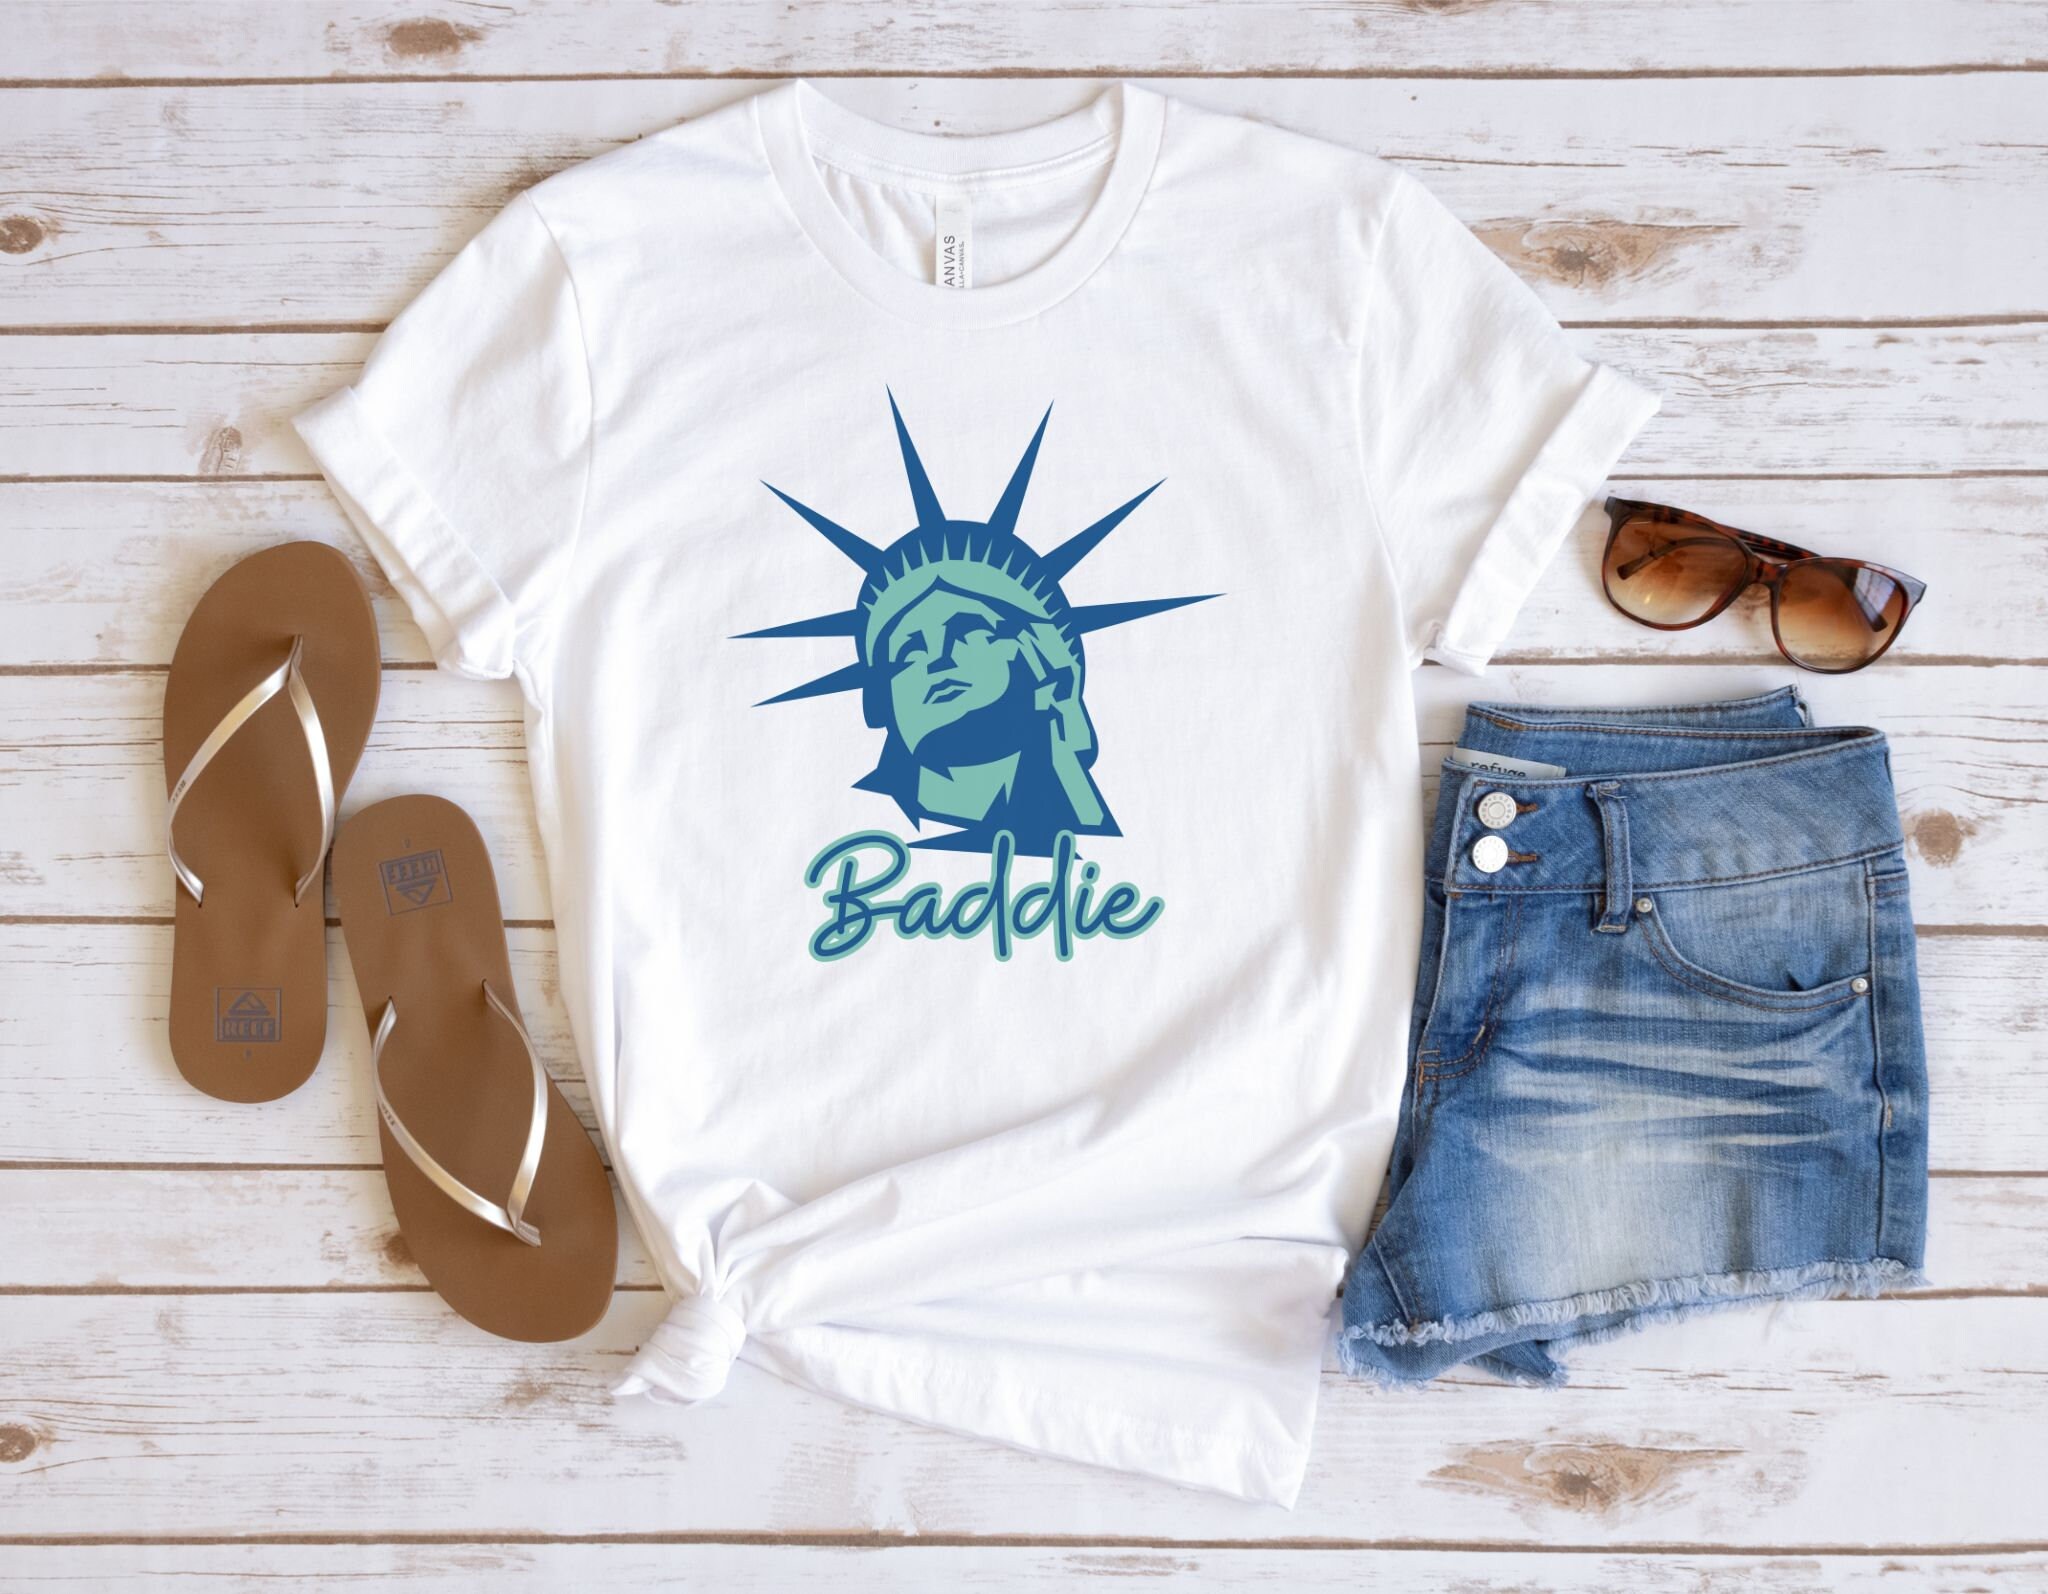 Lady Liberty Baddie Shirt America Shirt Lady Liberty Shirt - Etsy